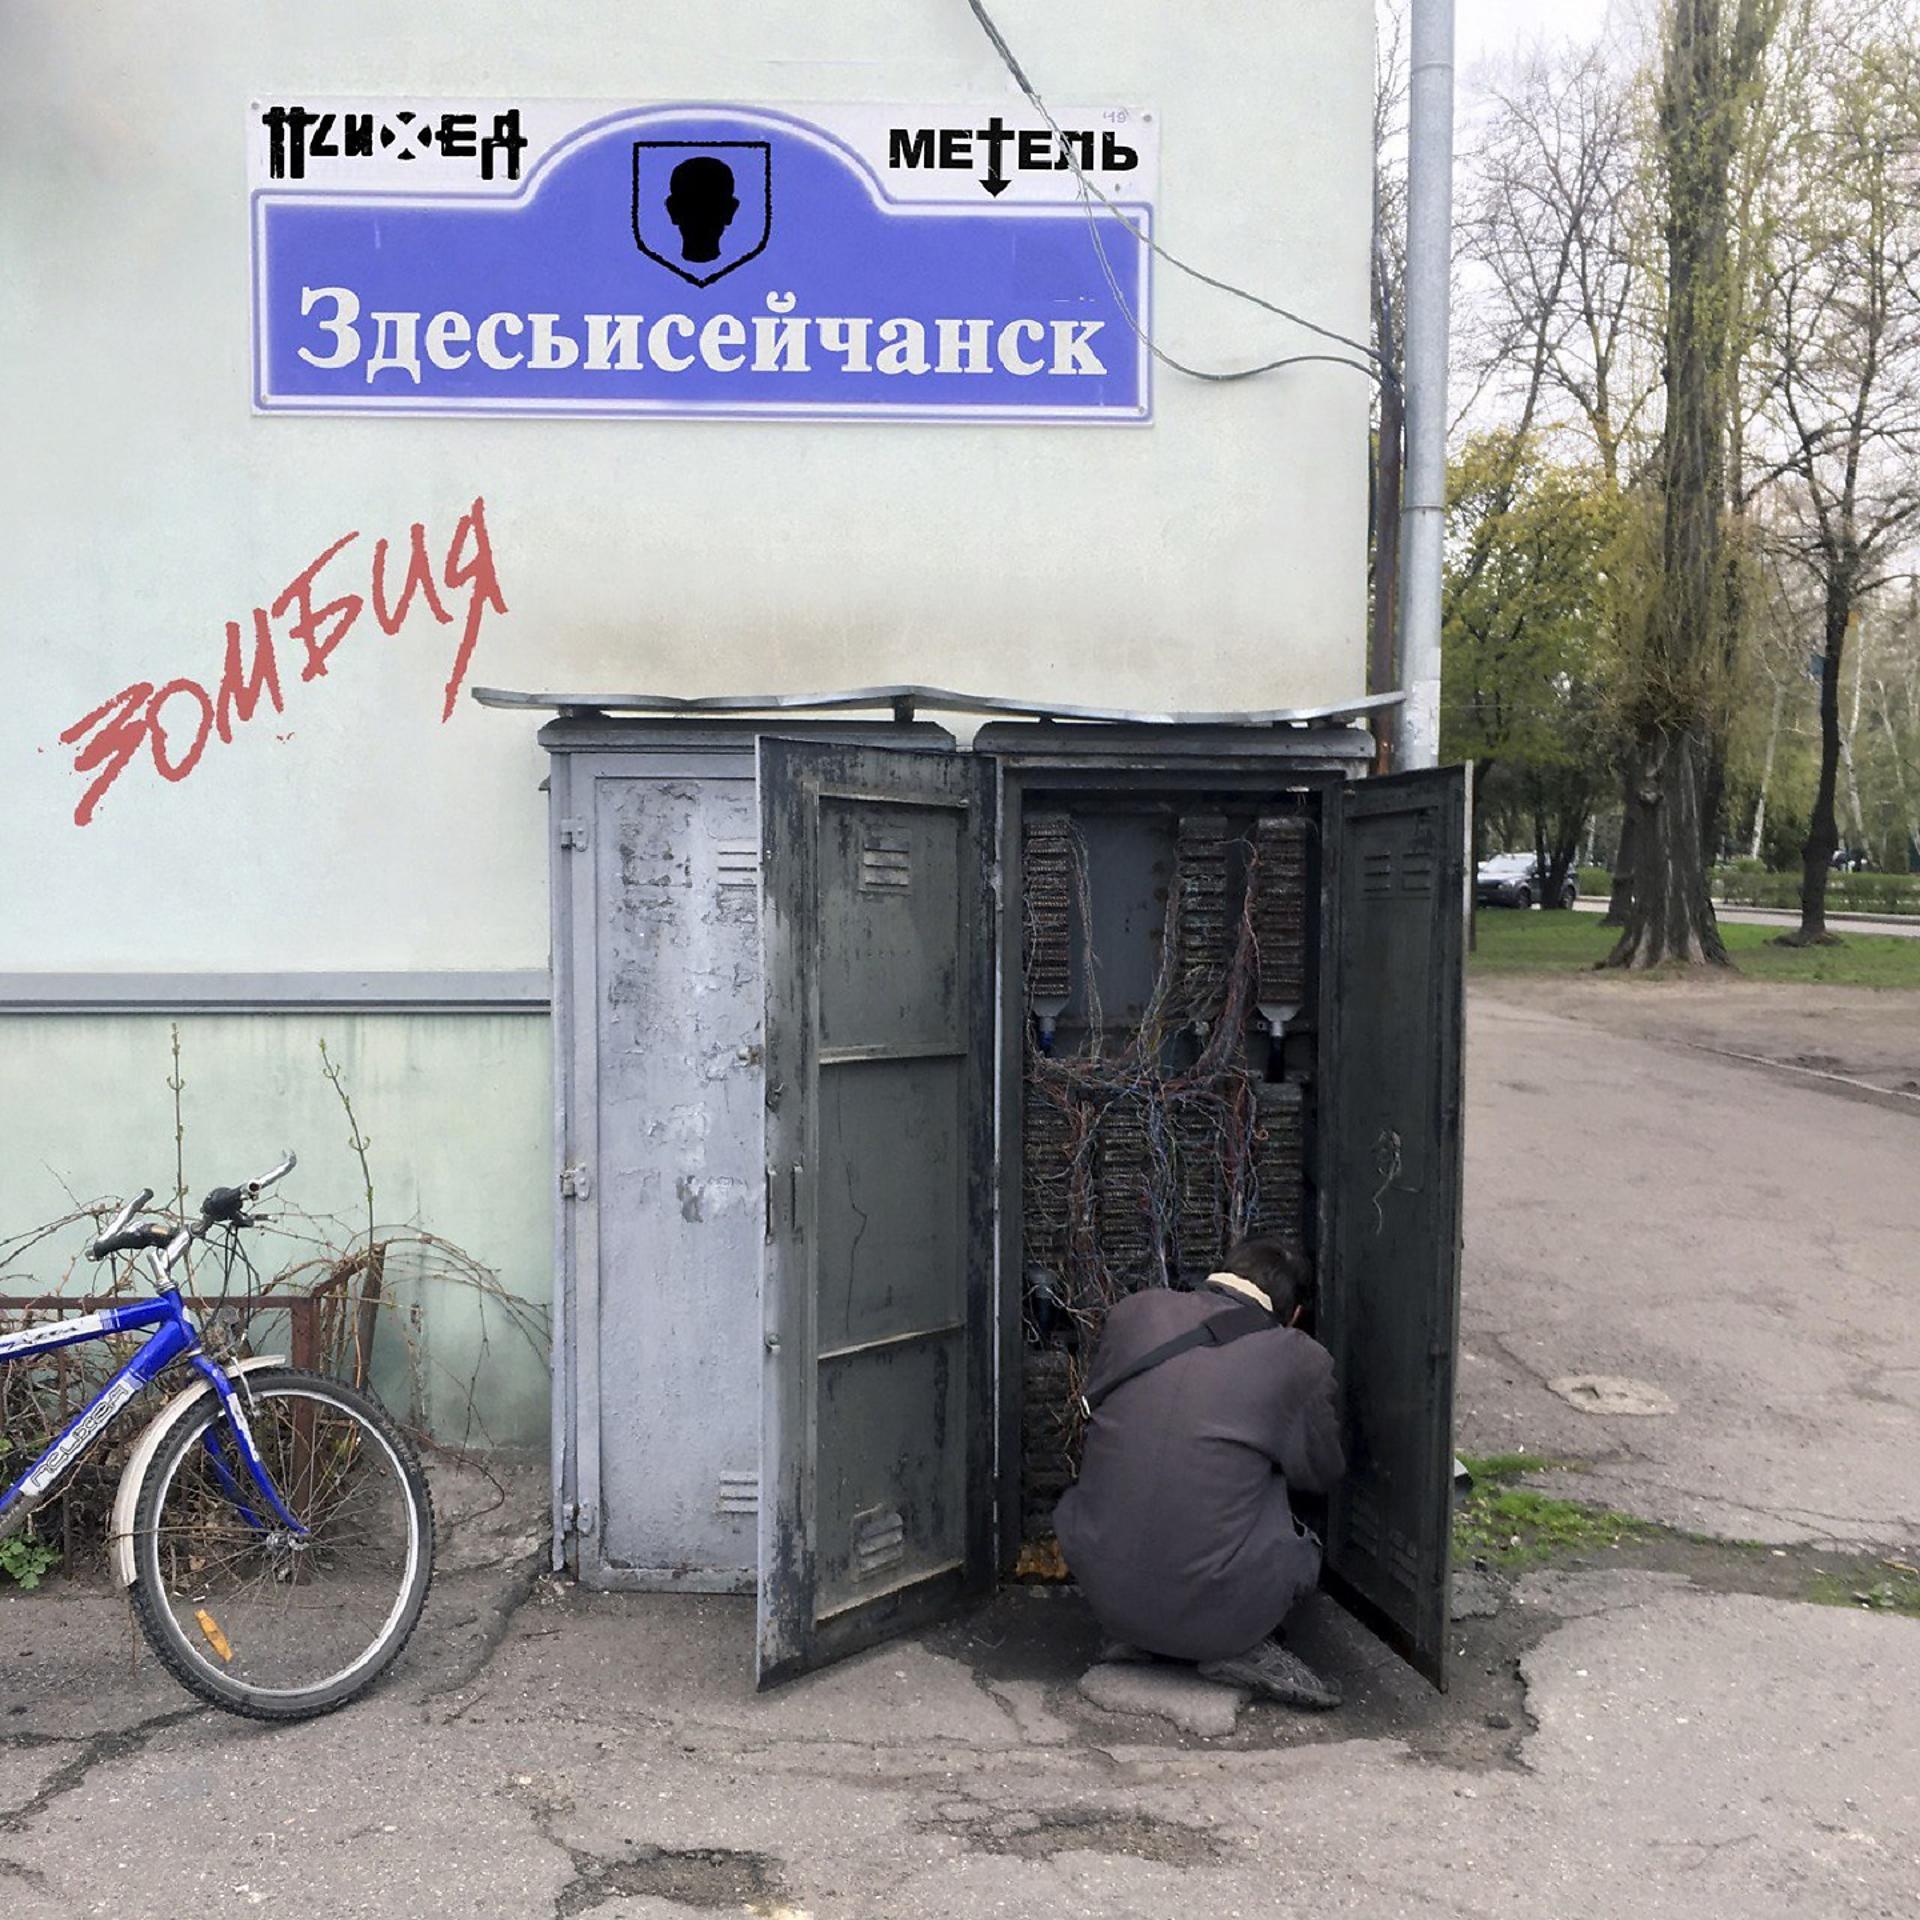 Постер к треку Психея, Метель - Здесьисейчанск / Зомбия